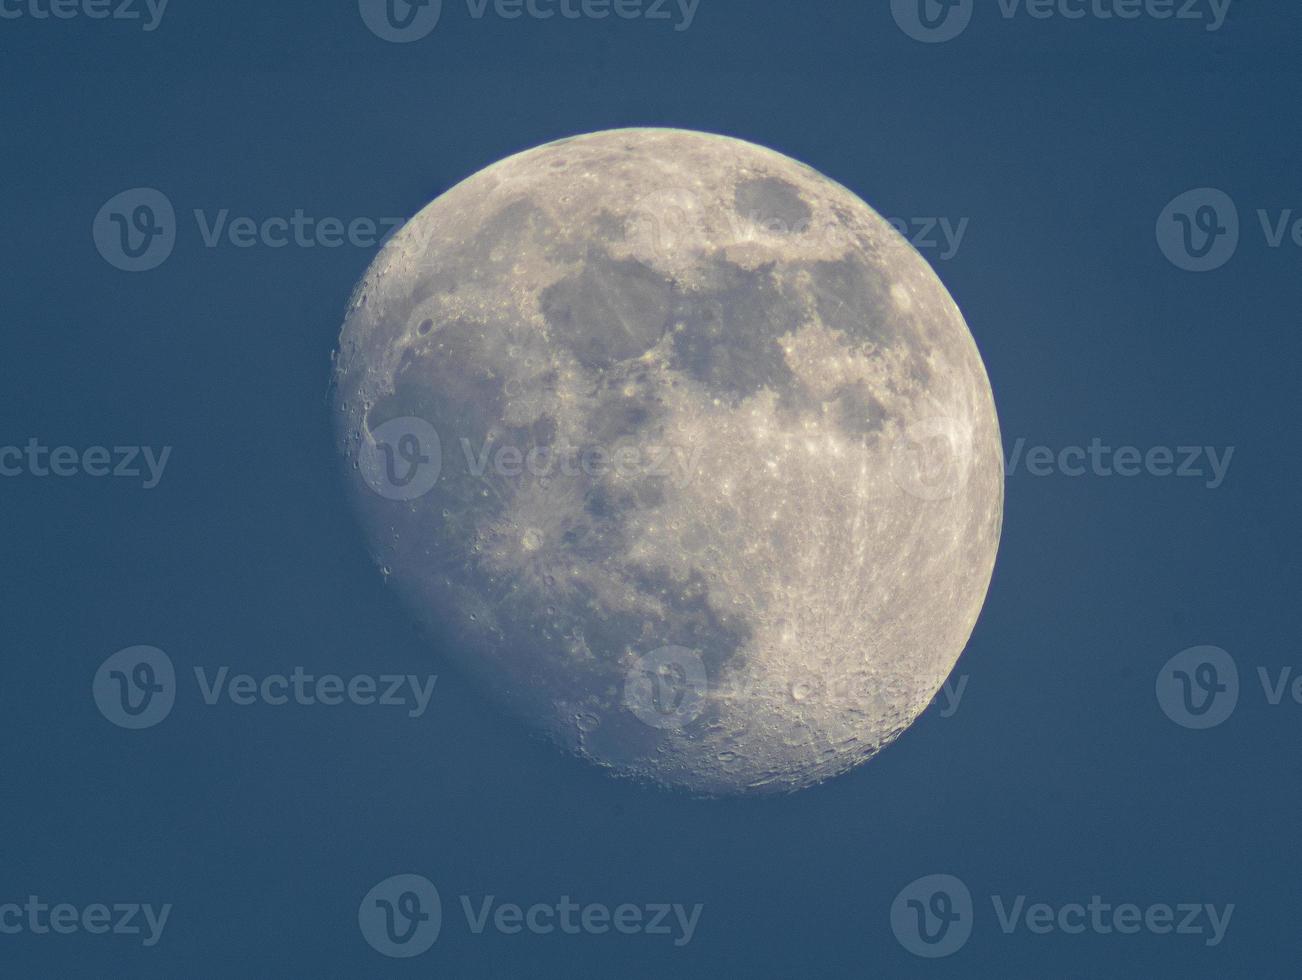 vaxande gibbous moon,tiden före fullmånen foto